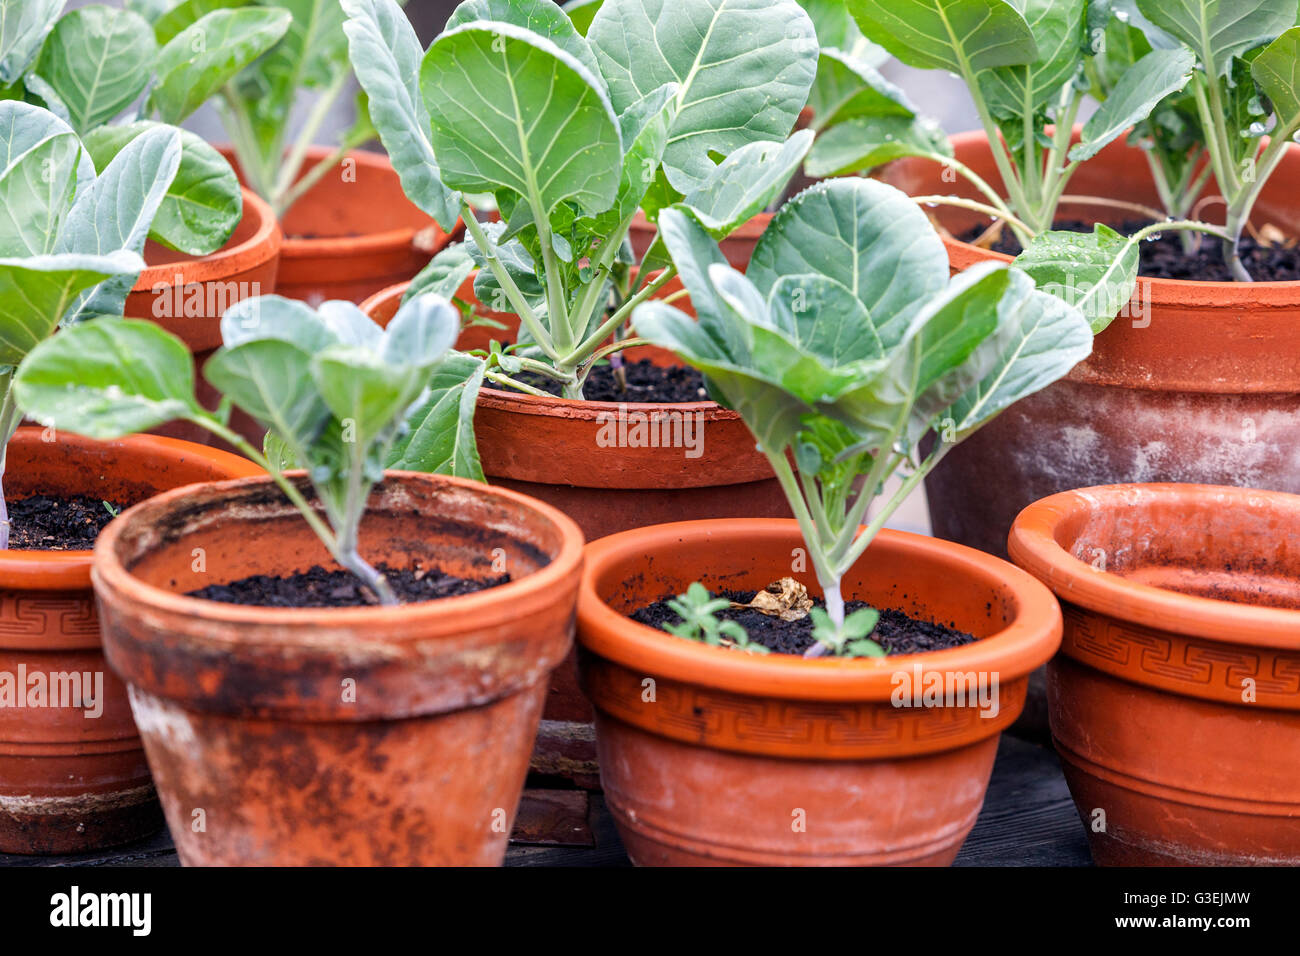 Young seedlings Kohlrabi growing plant pots garden terracotta Stock Photo